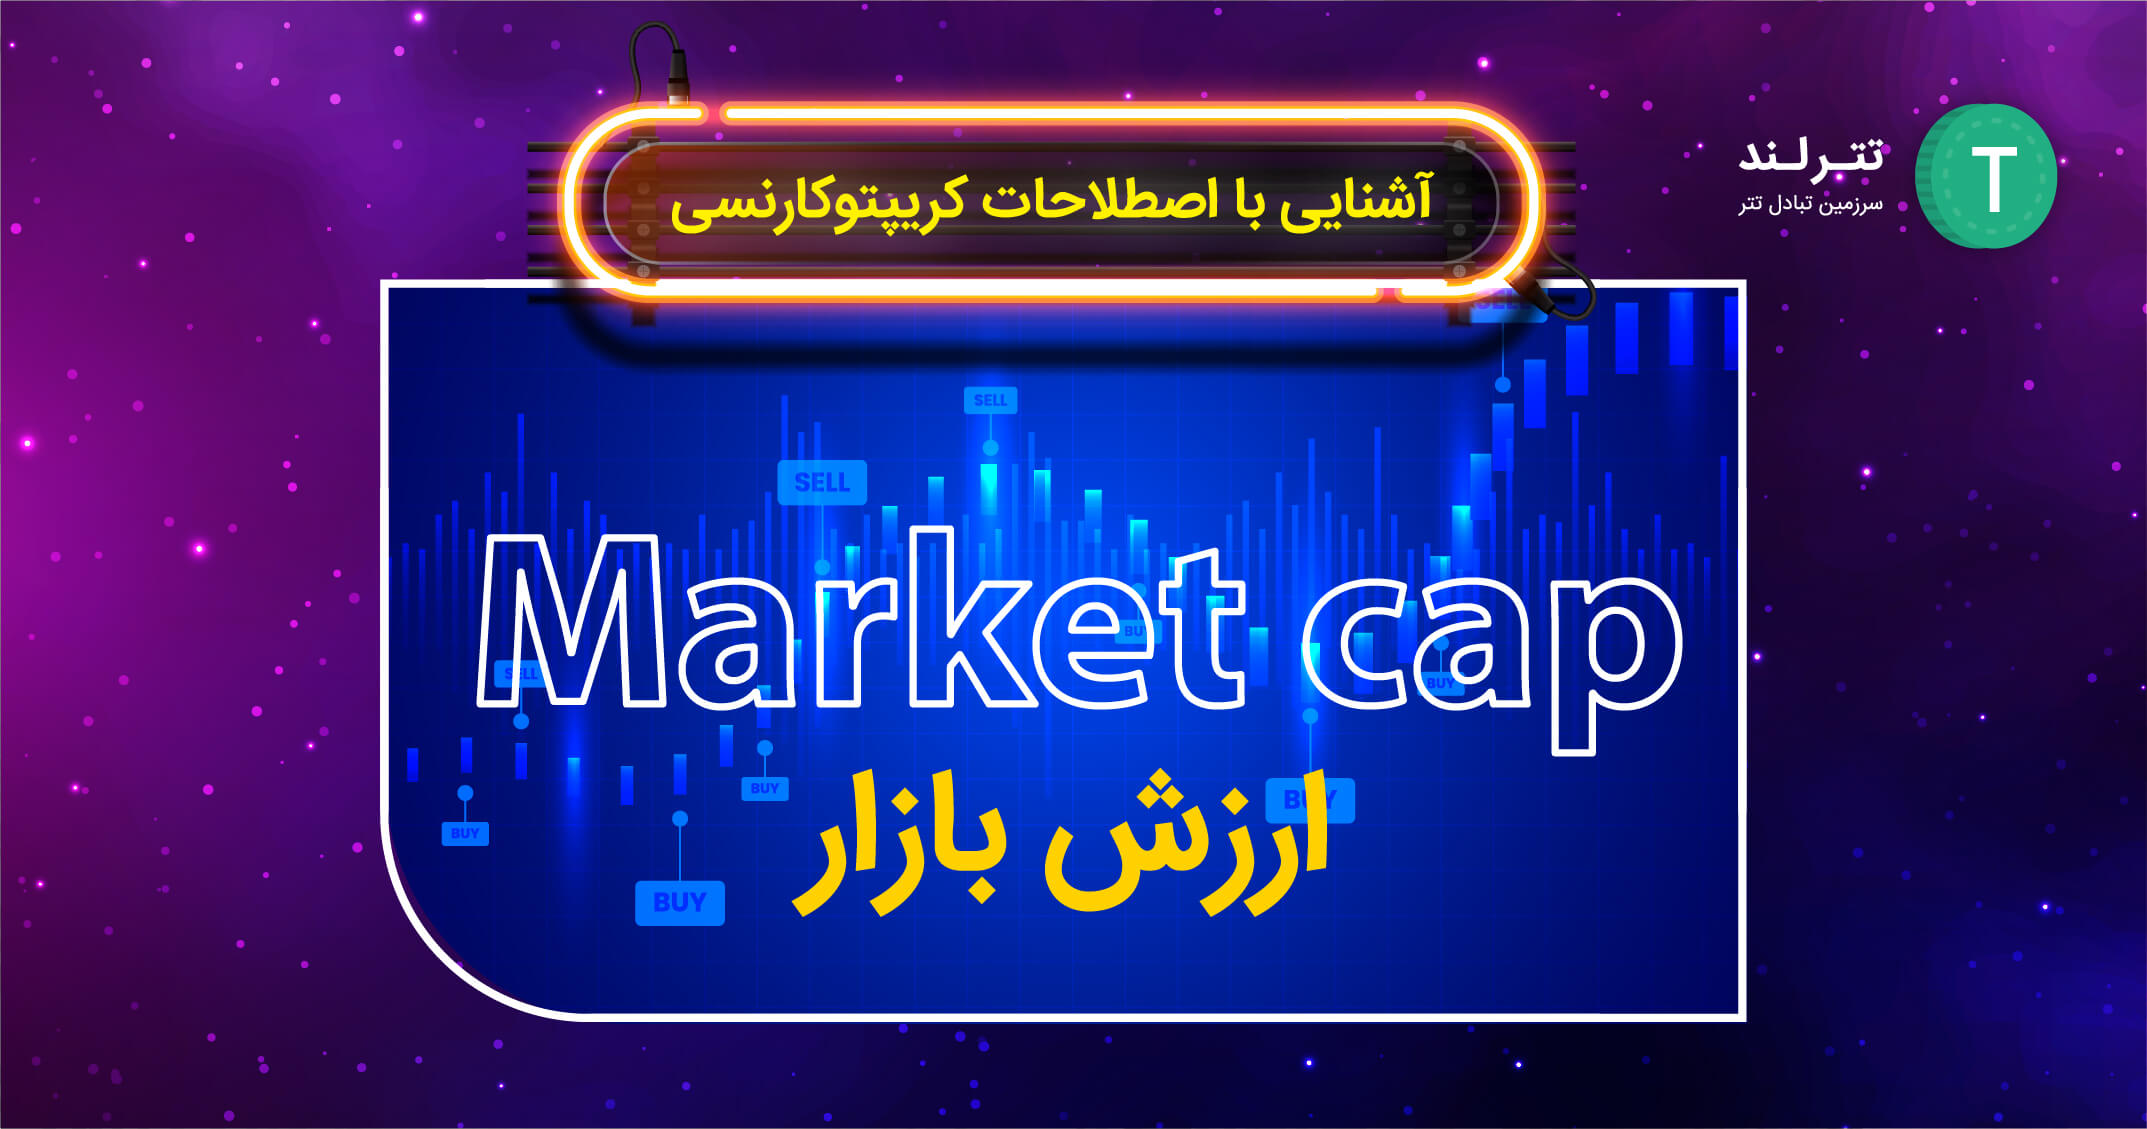  ارزش بازار (Market cap)